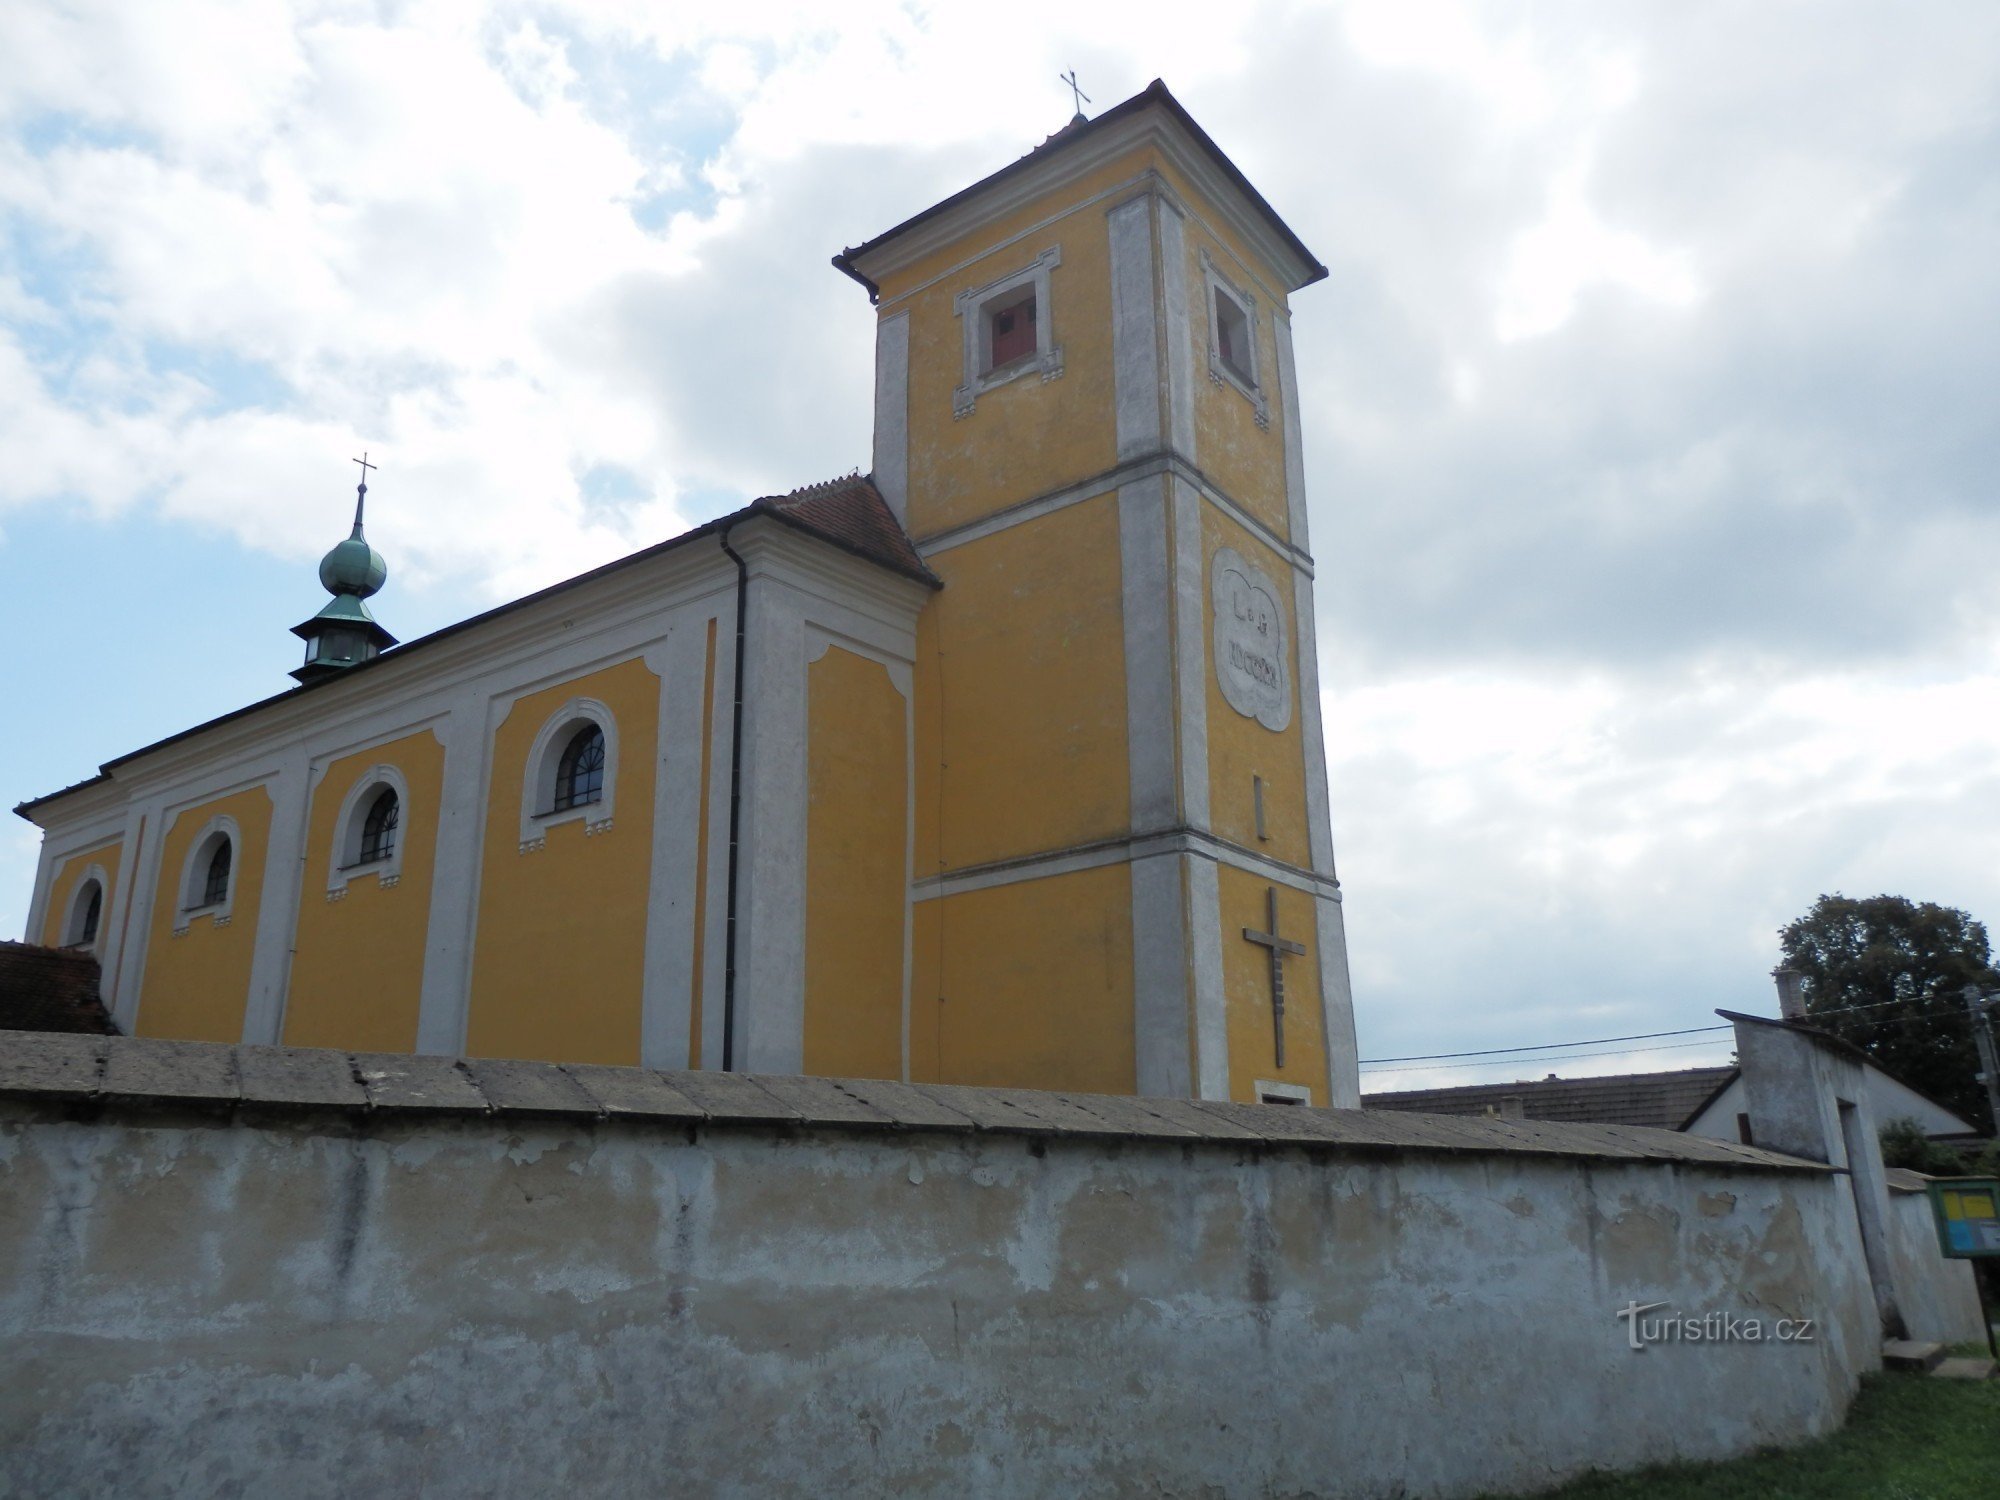 Церковь св. Мартина в Ровечне